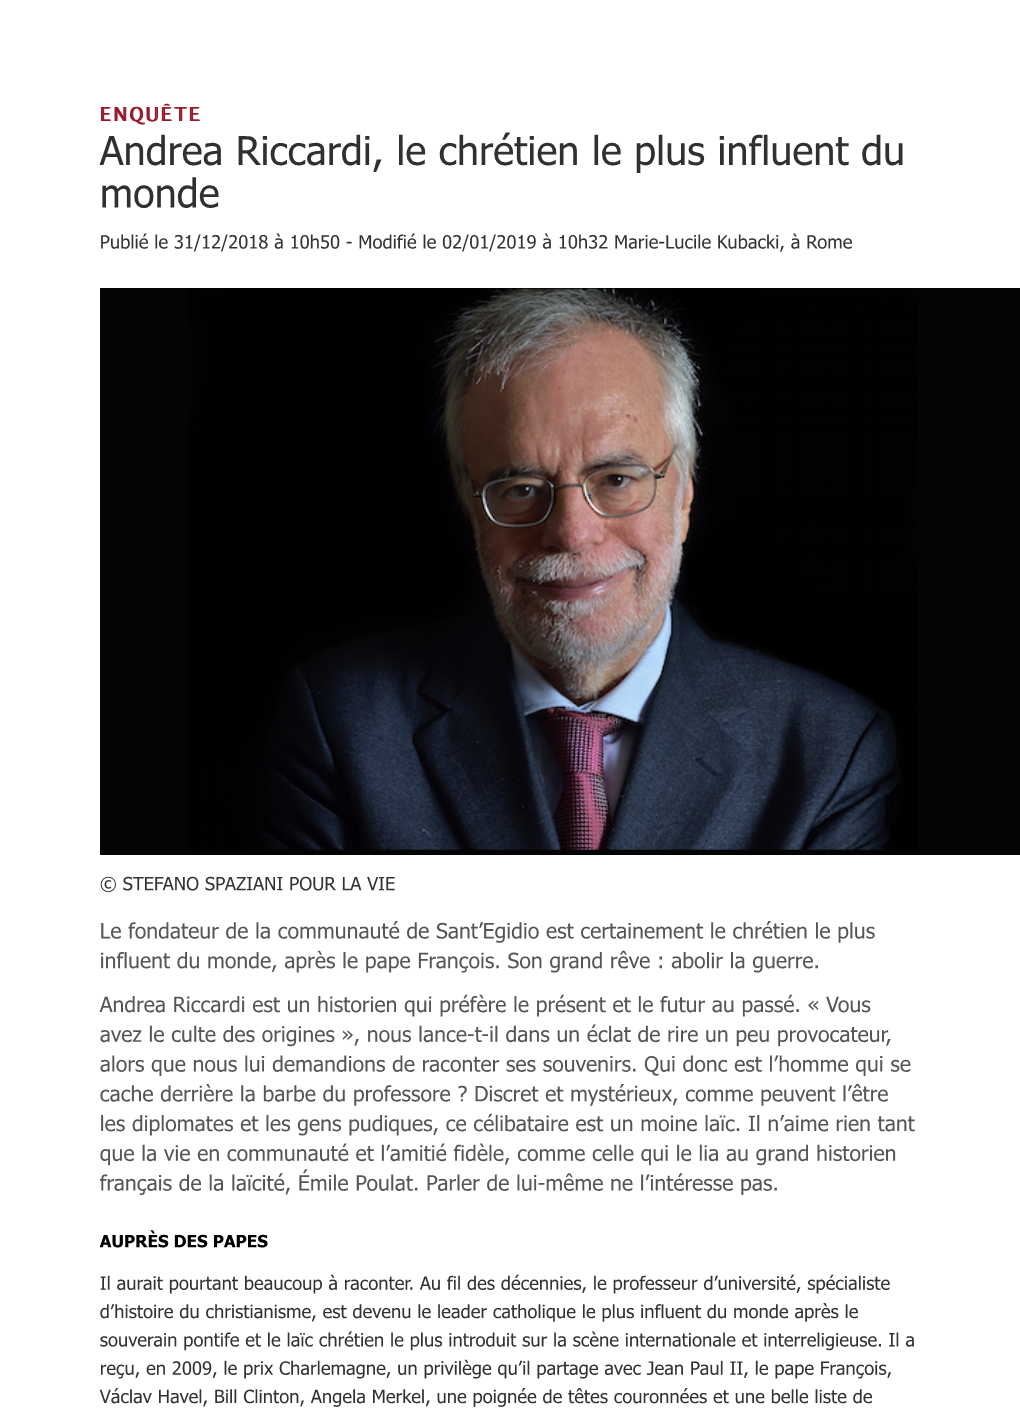 Andrea Riccardi, Le Chrétien Le Plus Influent Du Monde 04 Janvier 2019 LA